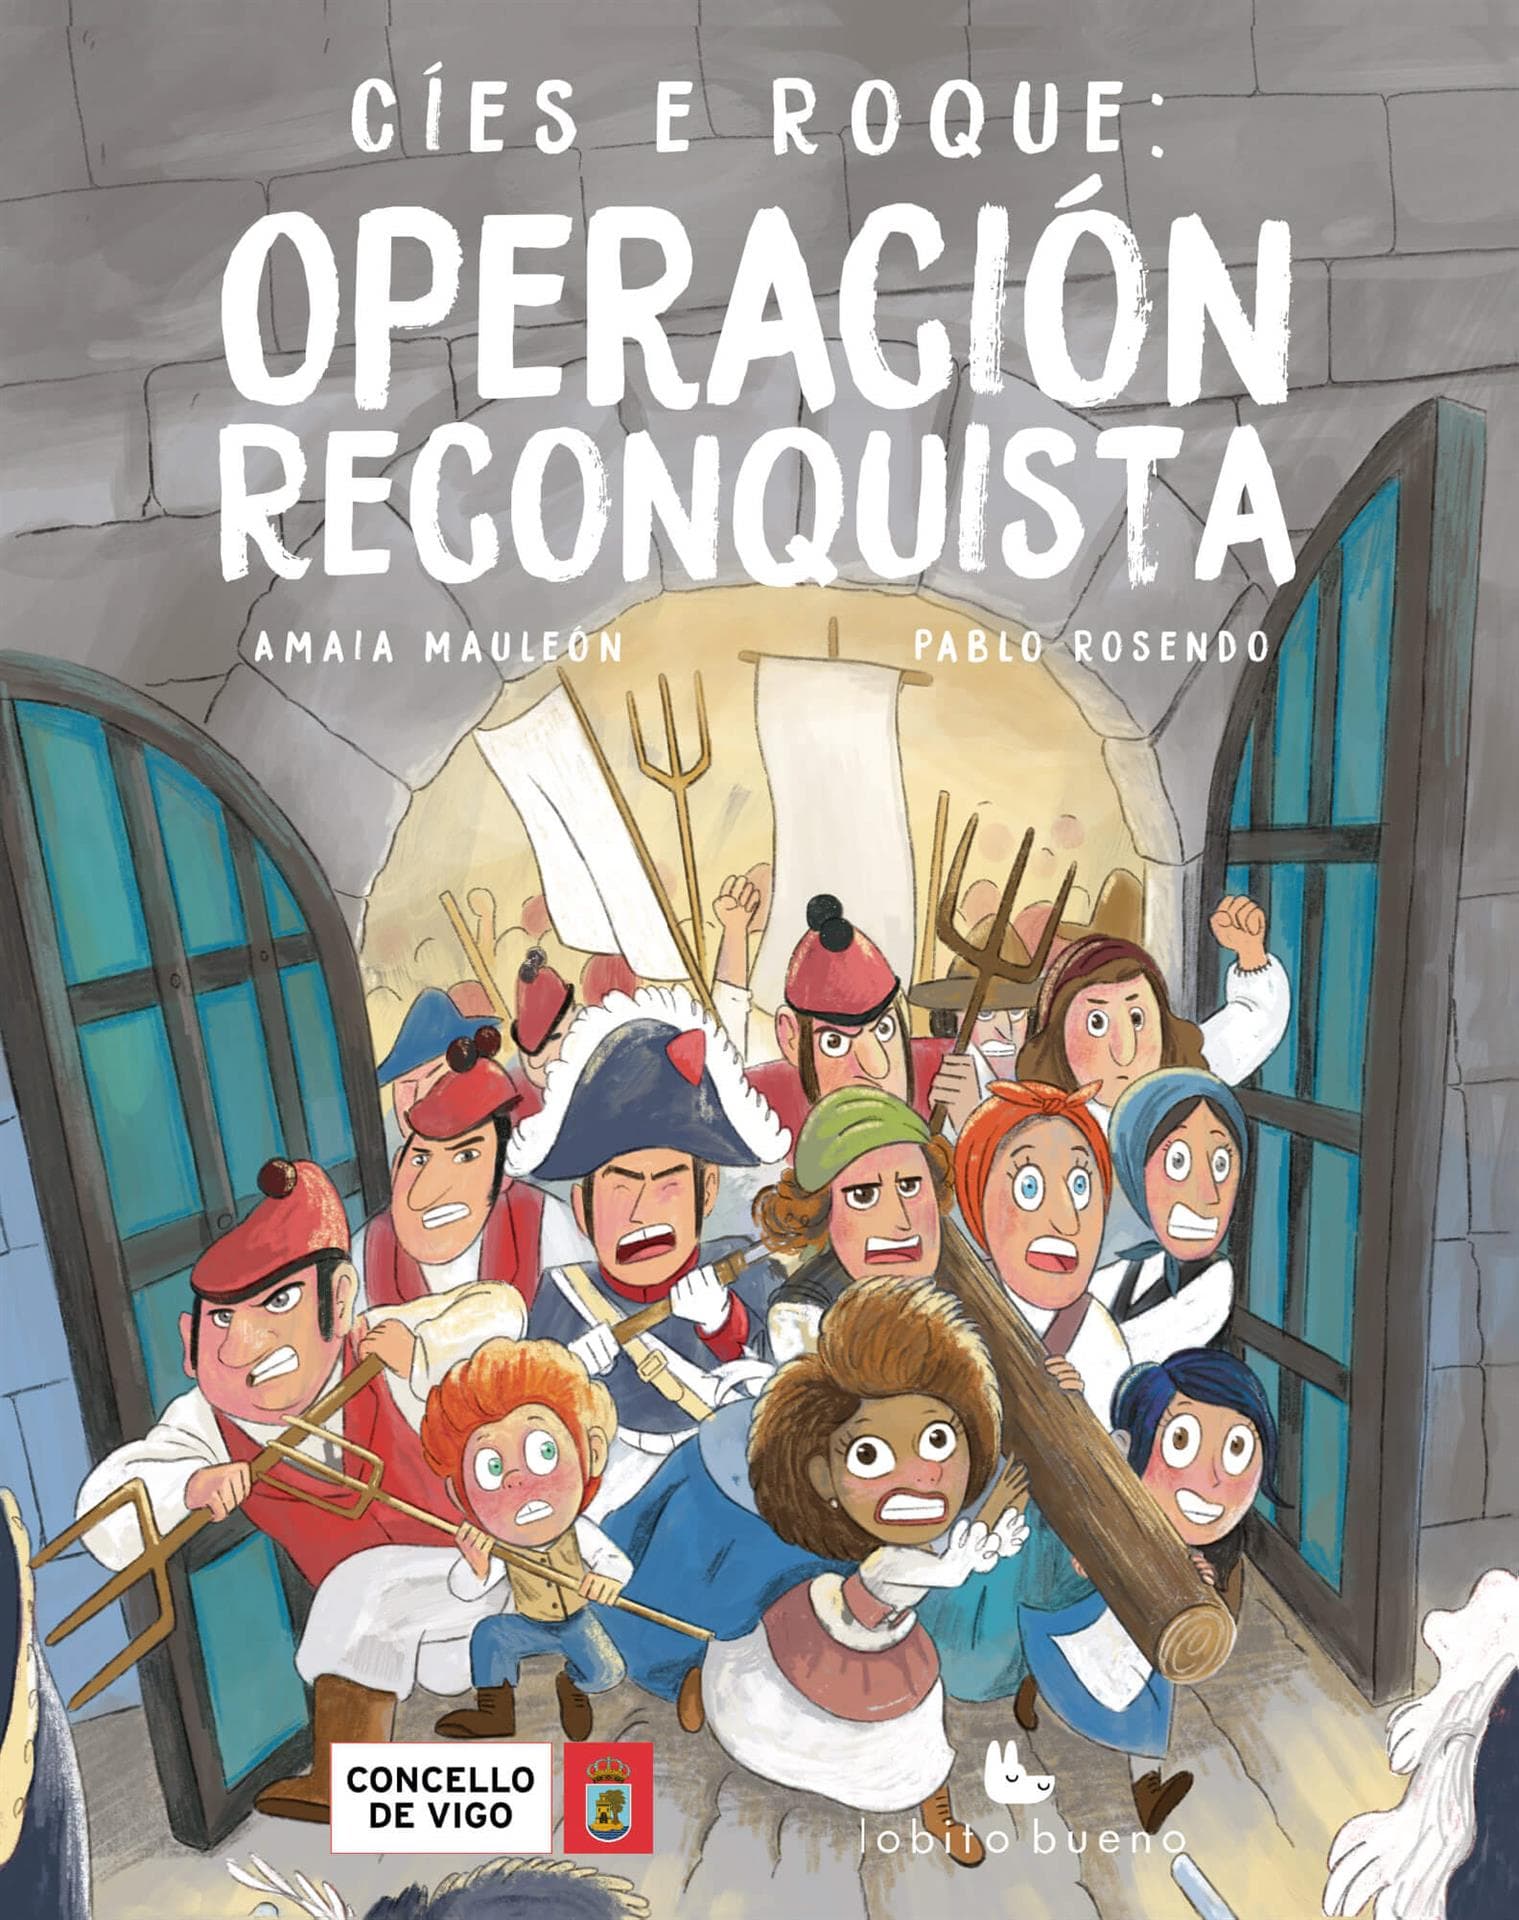 Cíes e Roque: Operación Reconquista